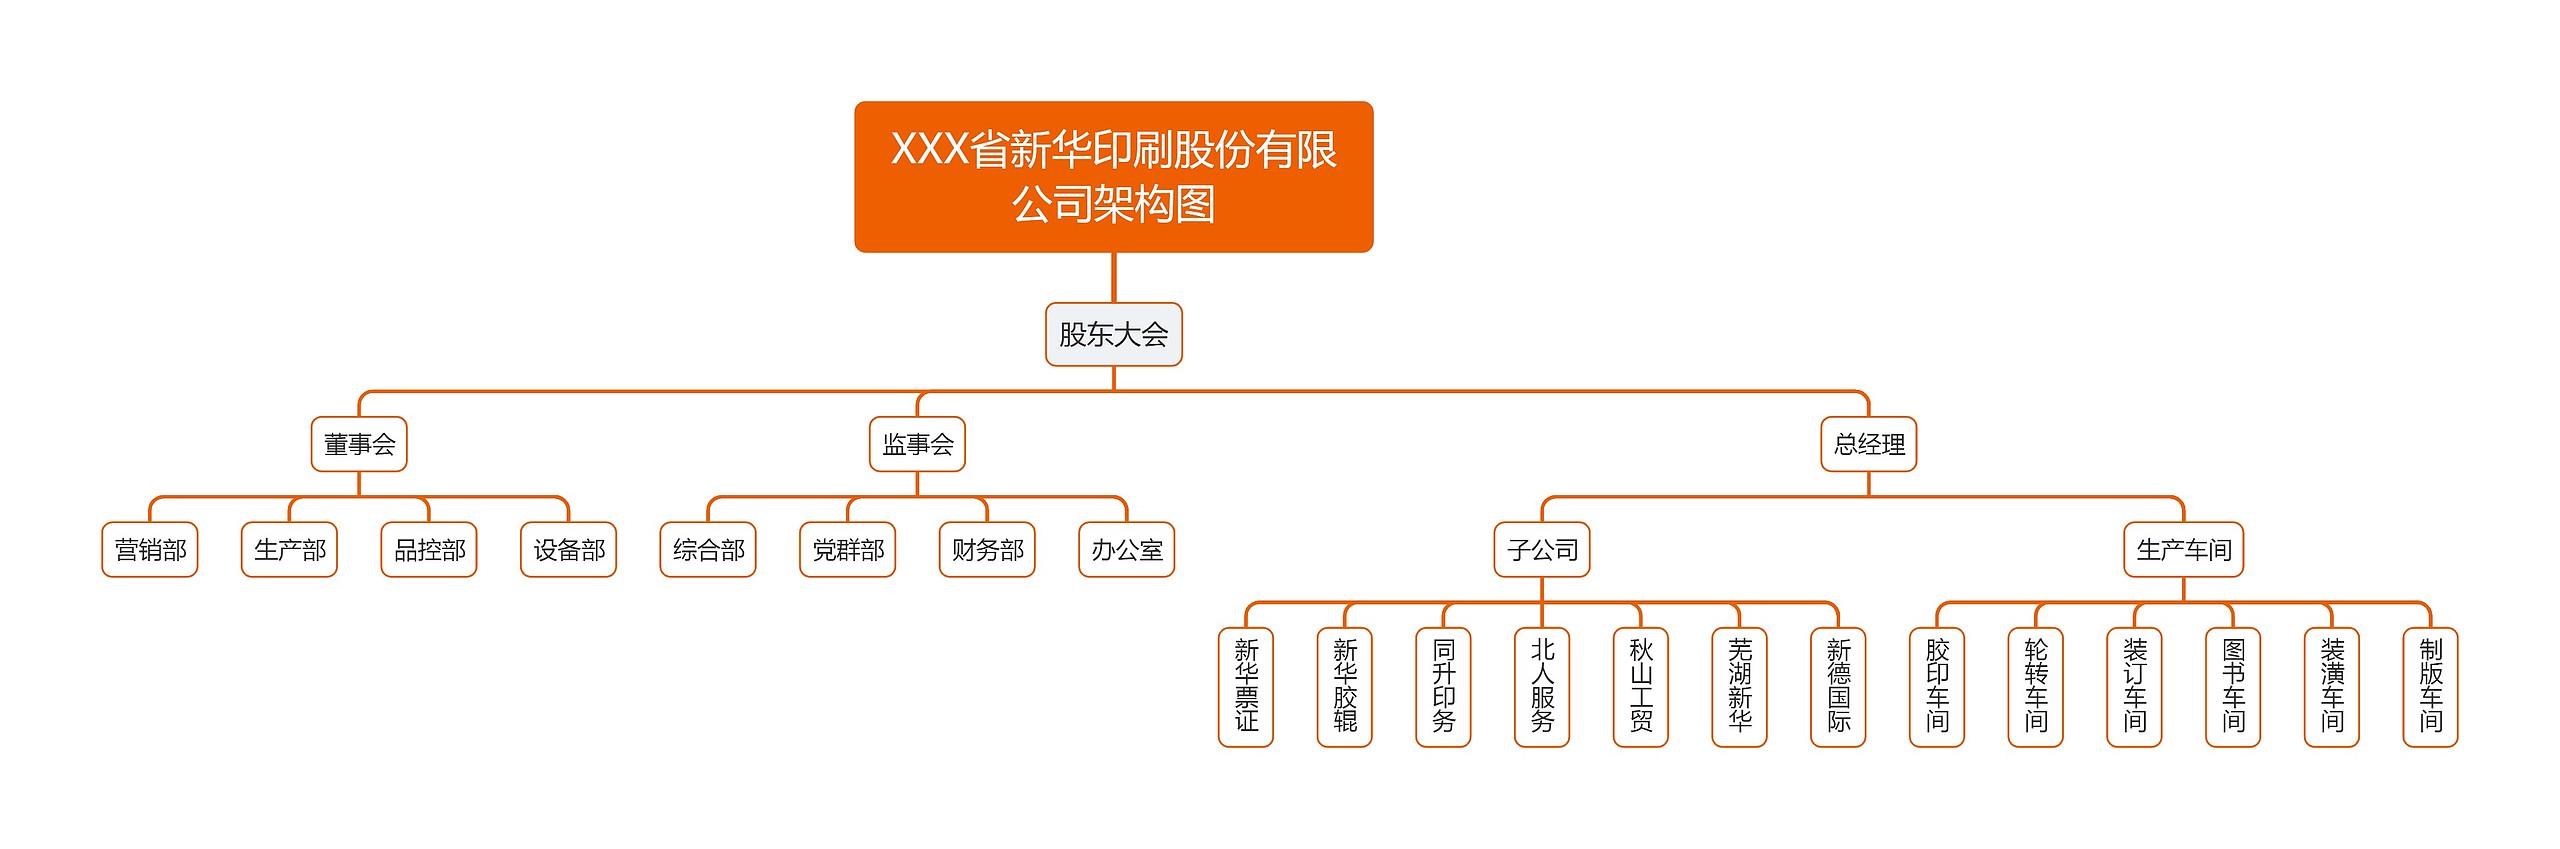 XXX省新华印刷股份有限公司架构图思维导图